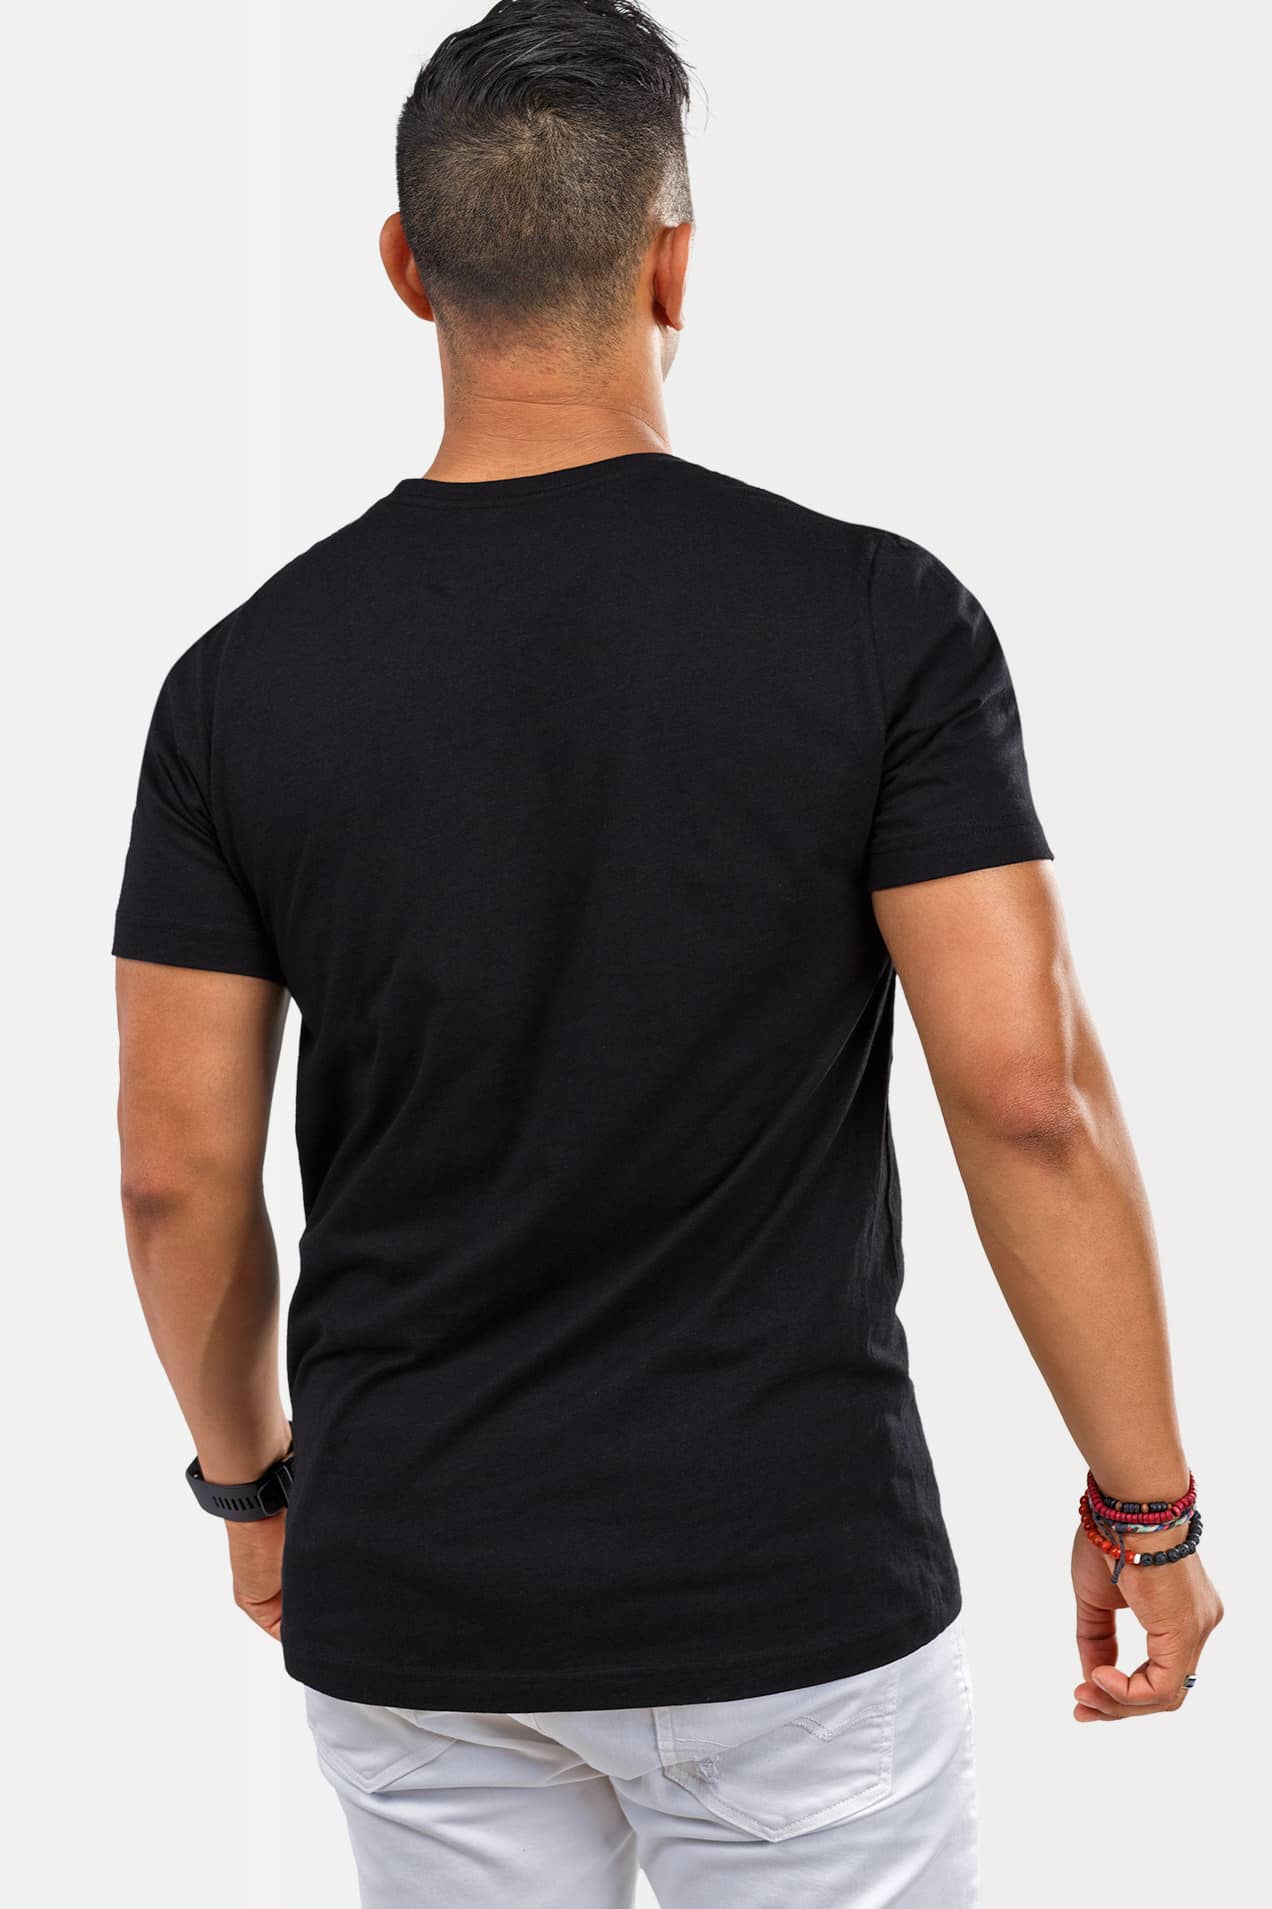 Bachata Mode On – Men’s T-shirt – Motion Envy